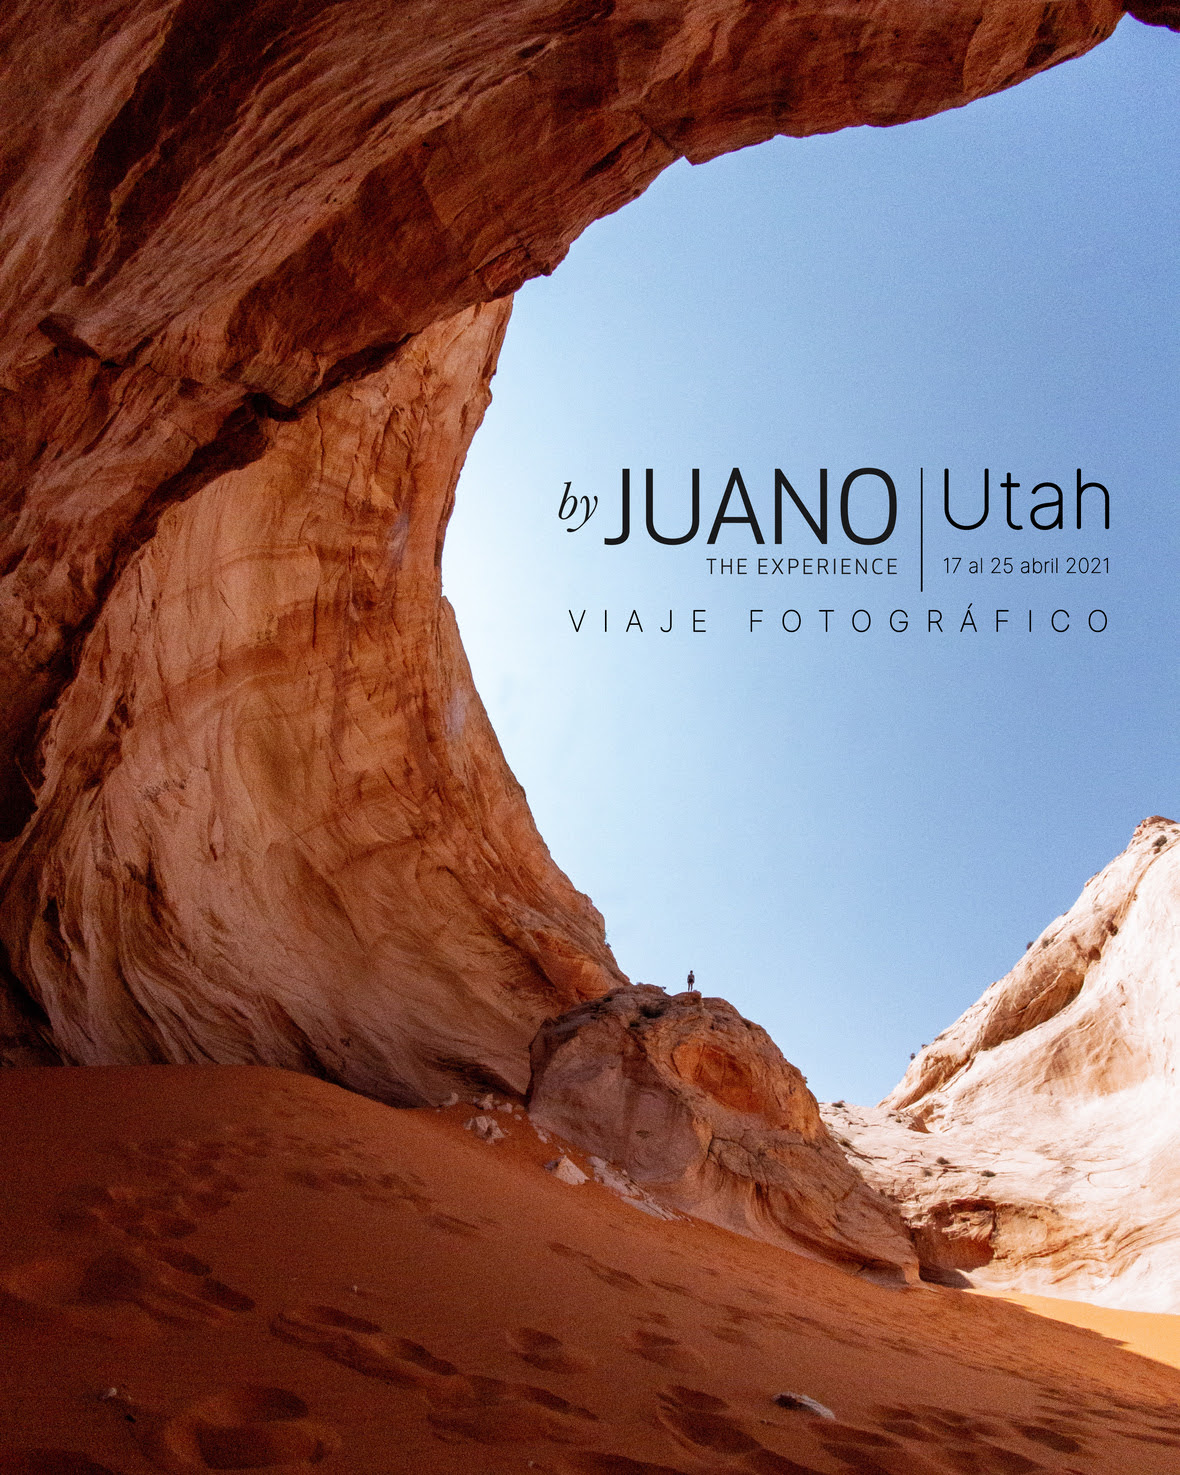 ByJuano te lleva a explorar fotográficamente Utah